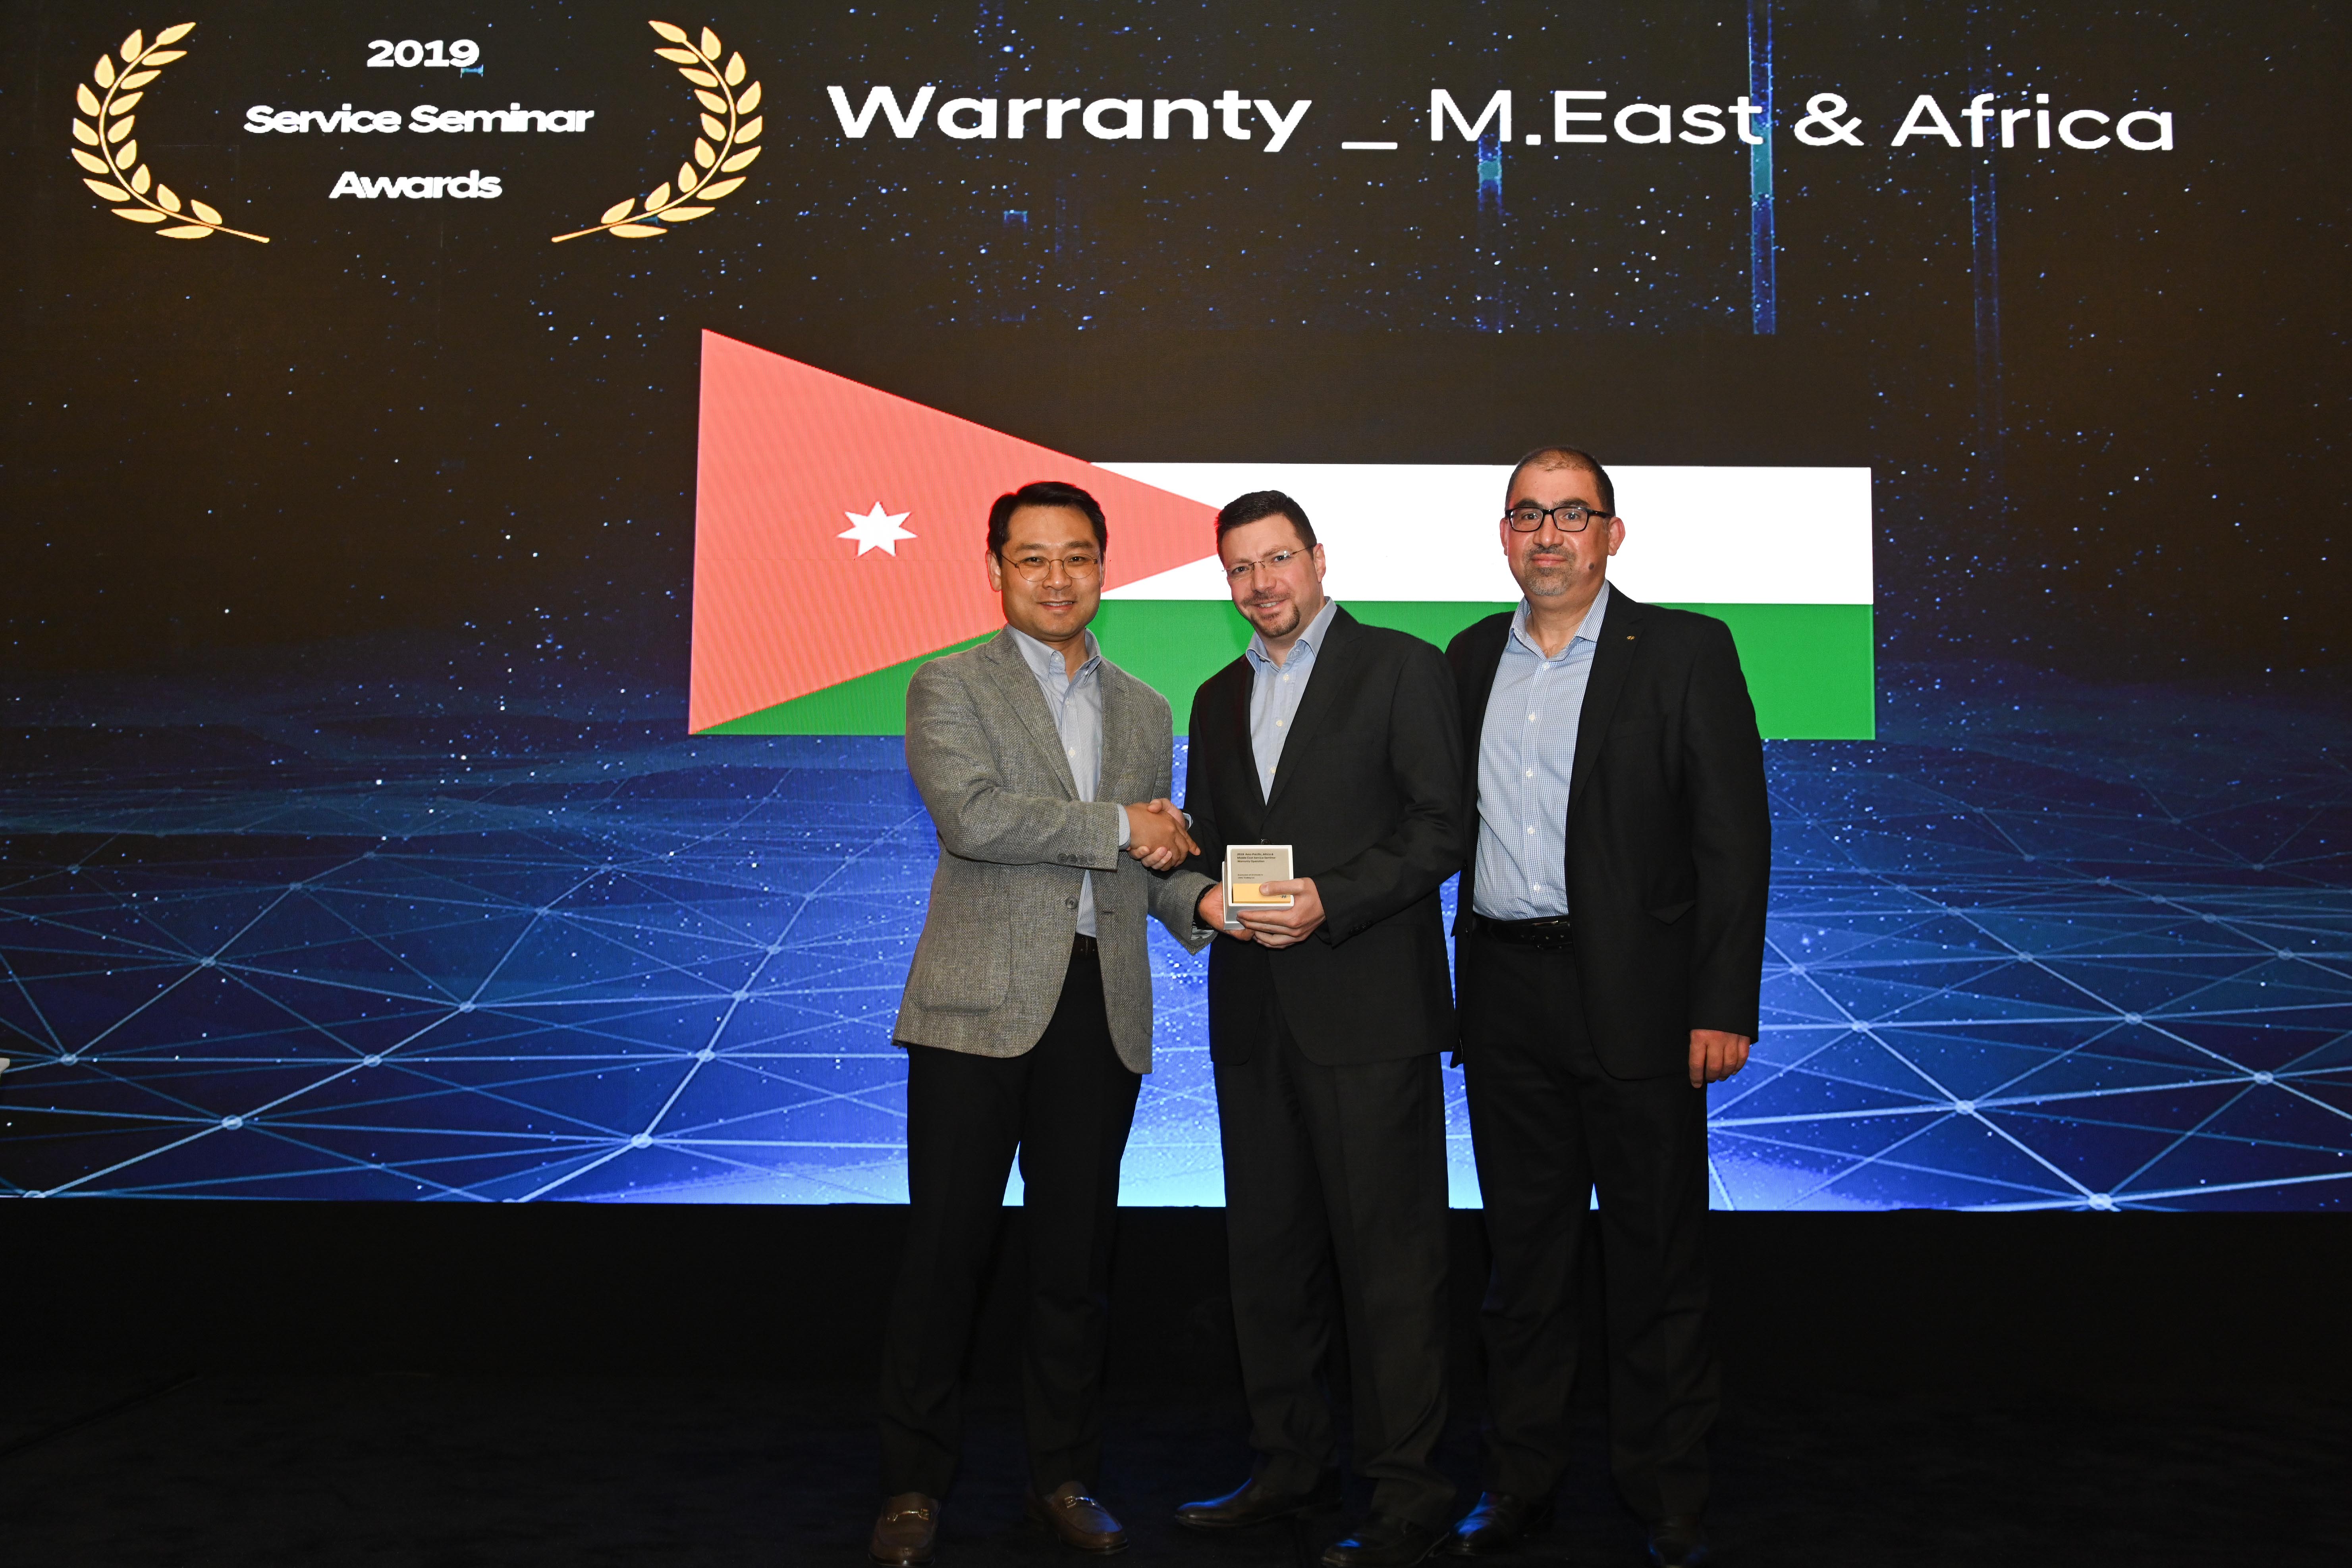 مؤسسة الوحدة للتجارة - هيونداي الأردن تحصل على جائزة أفضل وكيل في اسيا وأفريقيا والشرق الأوسط